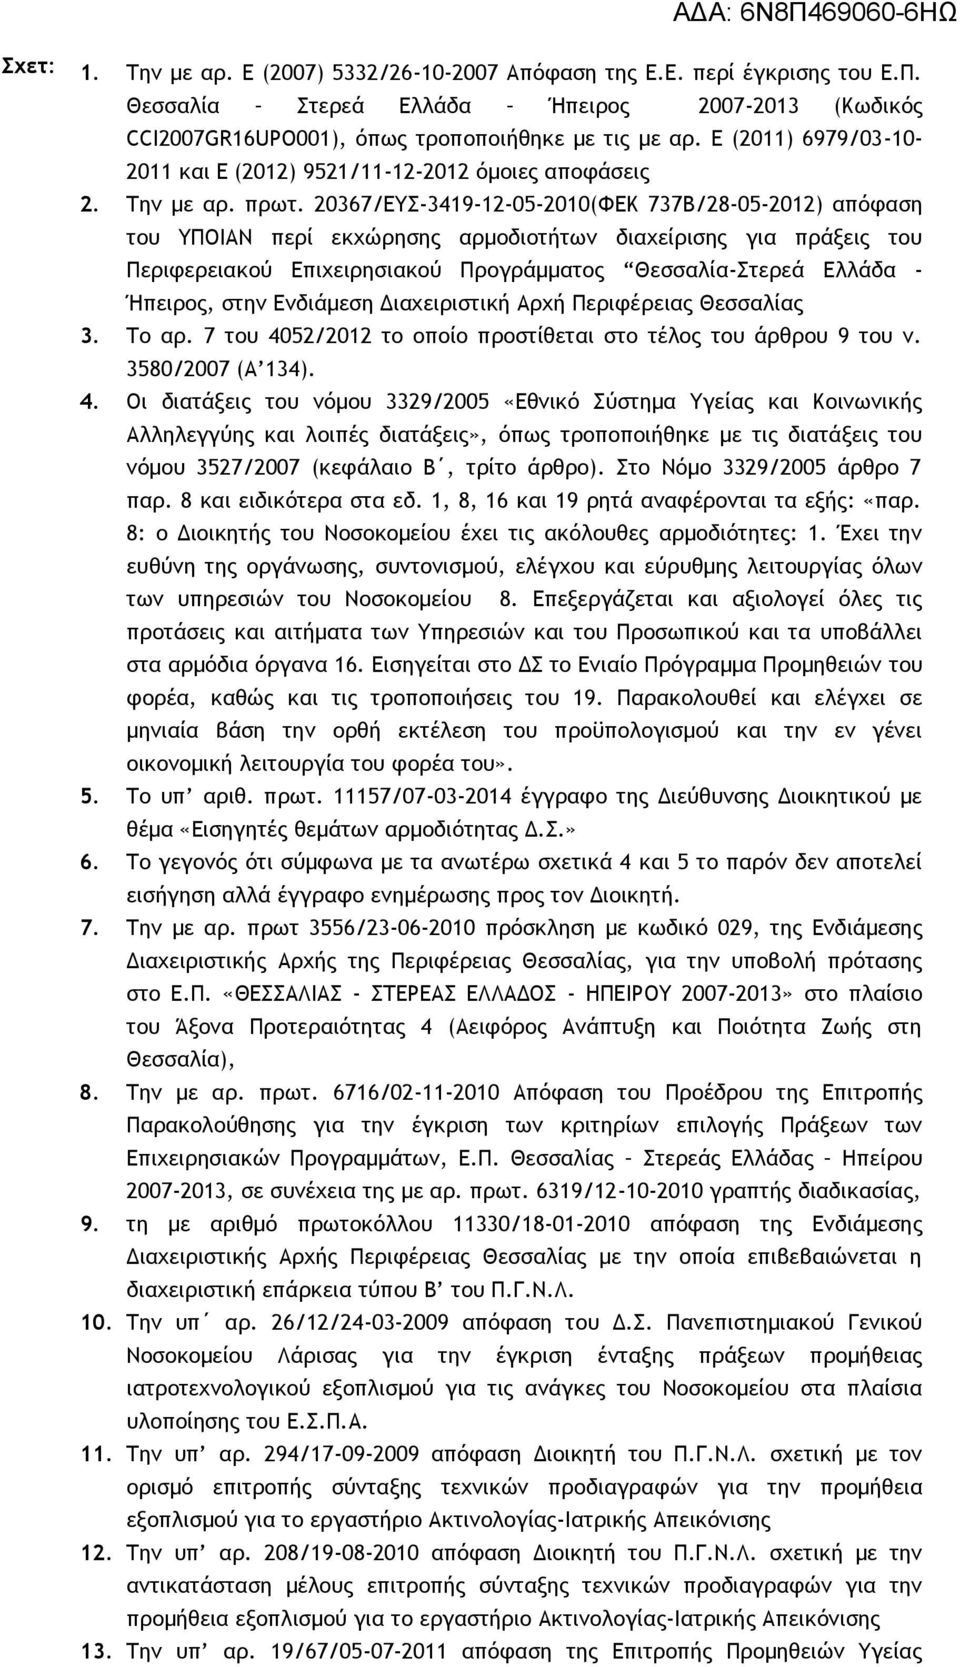 20367/ΕΥΣ-3419-12-05-2010(ΦΕΚ 737Β/28-05-2012) απόφαση του ΥΠΟΙΑΝ περί εκχώρησης αρμοδιοτήτων διαχείρισης για πράξεις του Περιφερειακού Επιχειρησιακού Προγράμματος Θεσσαλία-Στερεά Ελλάδα - Ήπειρος,